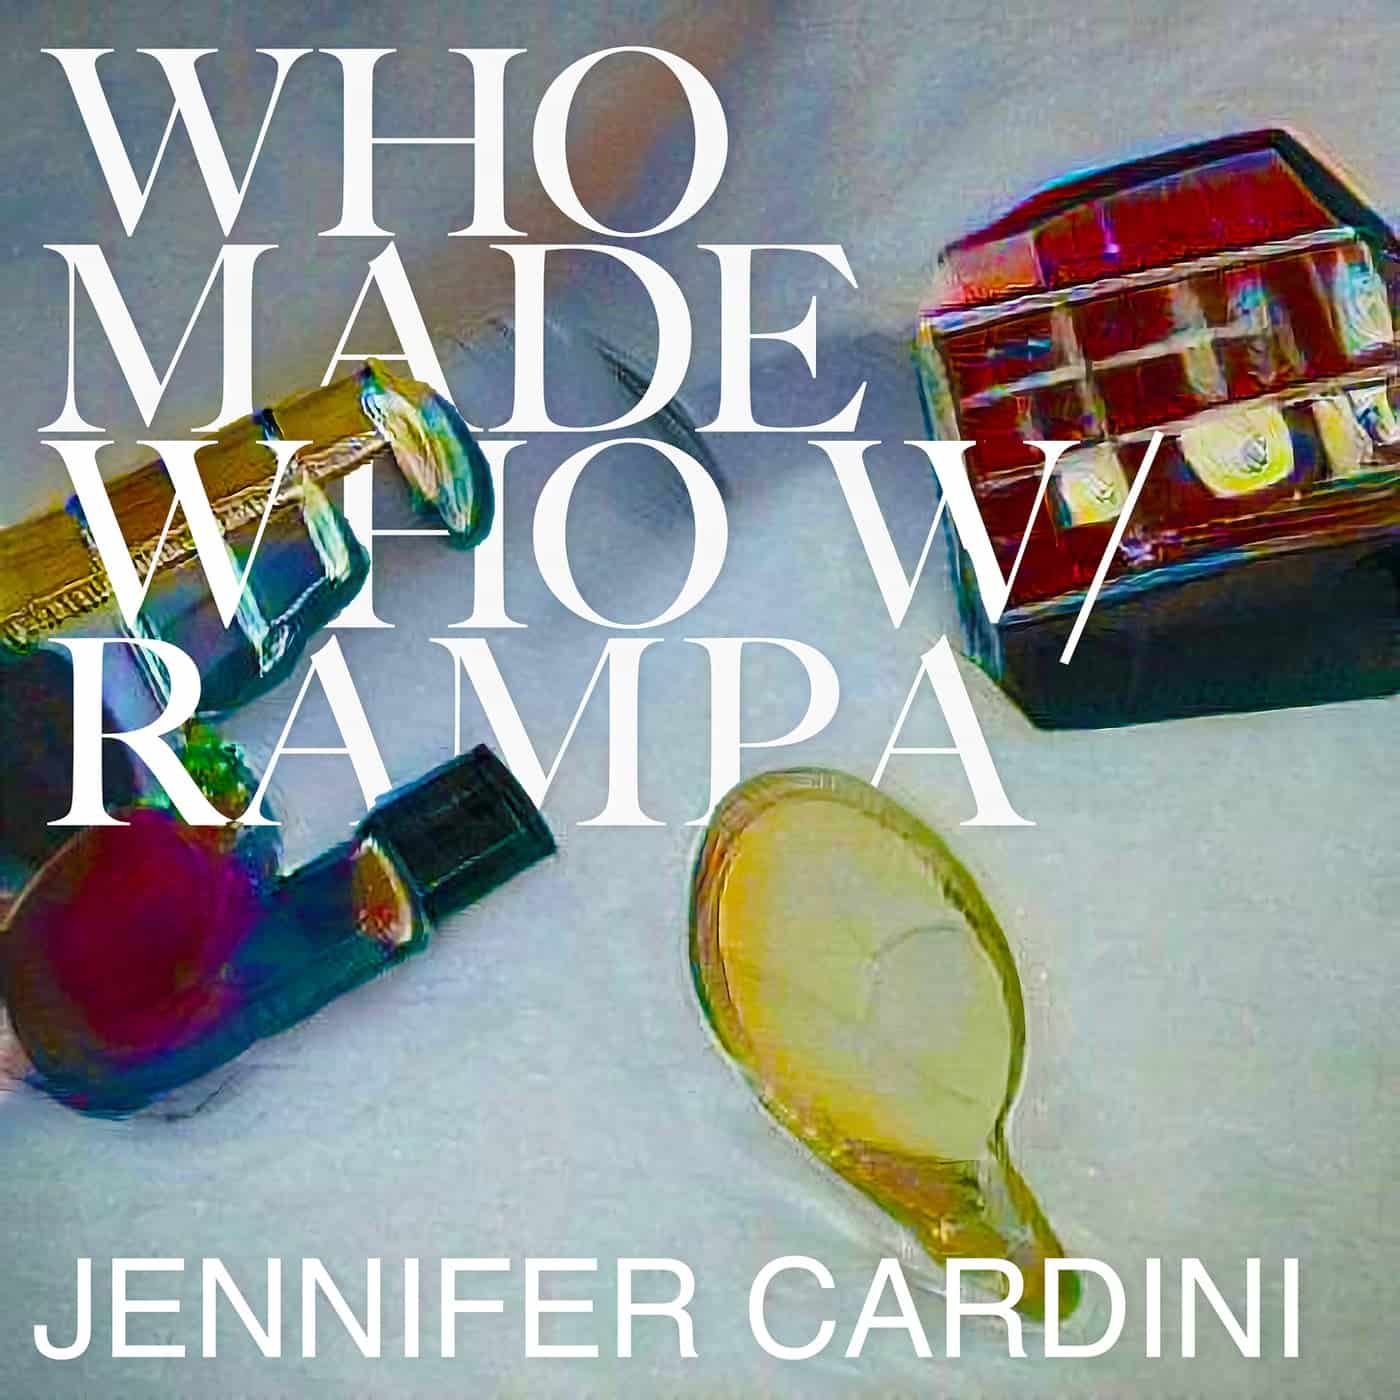 image cover: WhoMadeWho, Rampa - Everyday (Jennifer Cardini Remix) / 4066004475011